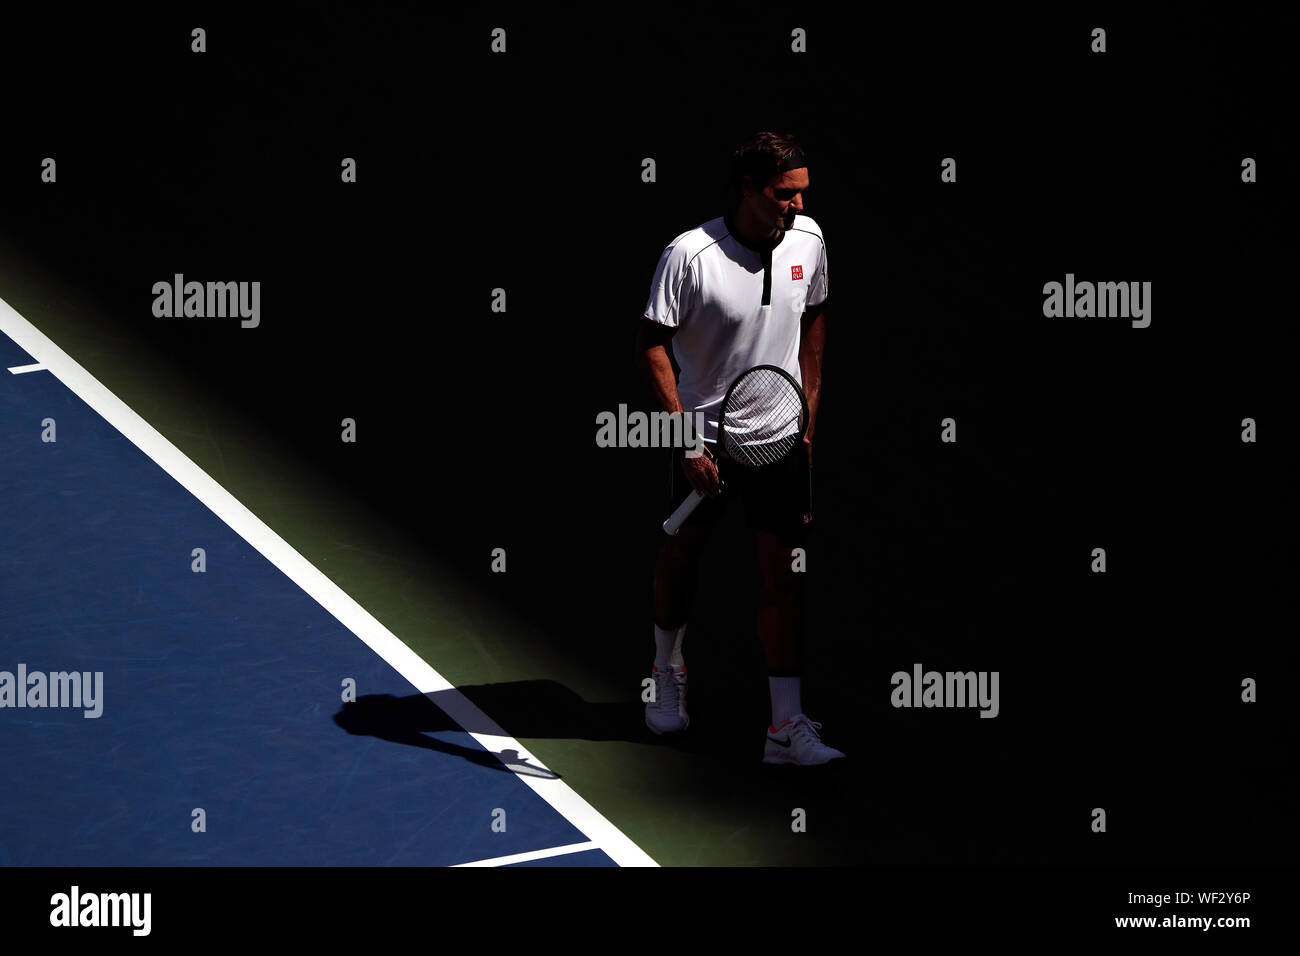 New York, Vereinigte Staaten. 30 Aug, 2019. Flushing Meadows, New York, Vereinigte Staaten - 30 August 2019. Roger Federer während seiner dritten Runde gegen Daniel Evans von Großbritannien bei den US Open in Flushing Meadows, New York. Federer gewann das Match in zwei Sätzen. Quelle: Adam Stoltman/Alamy leben Nachrichten Stockfoto